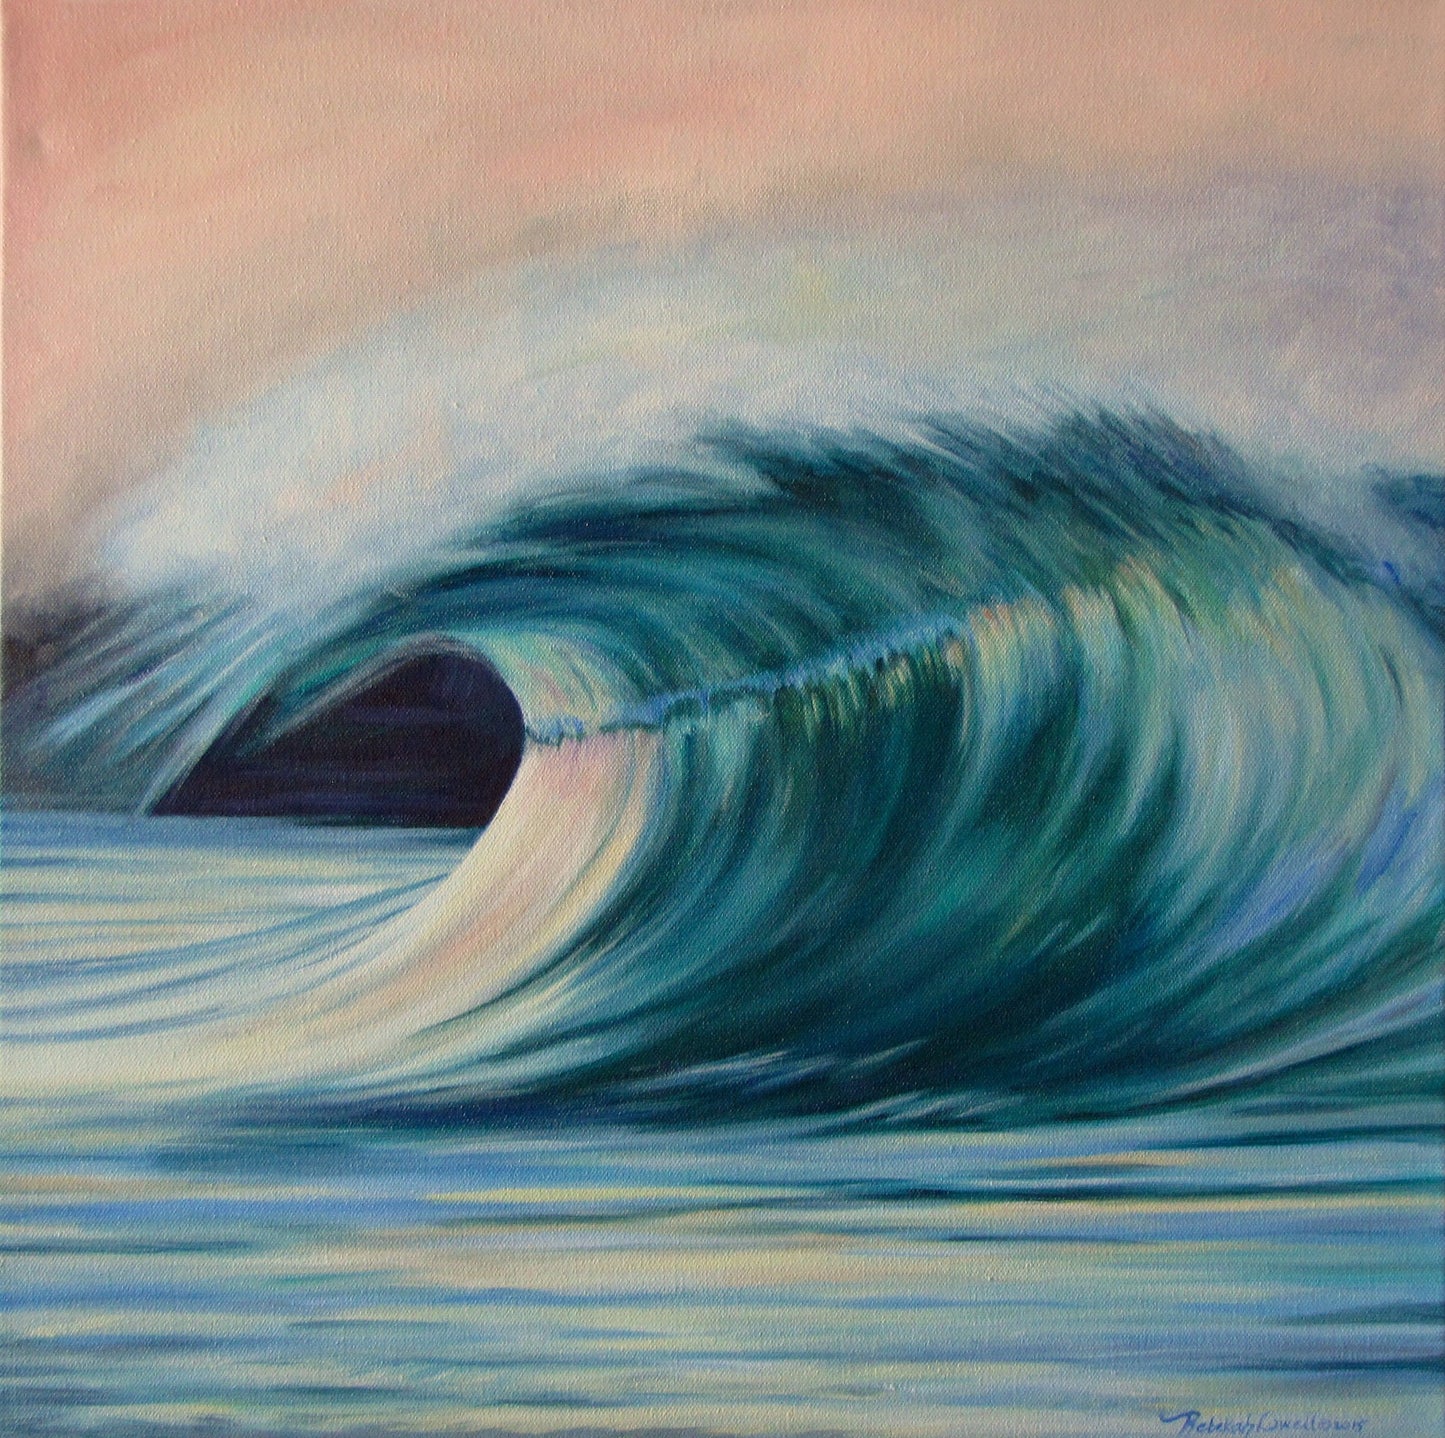 Ocean Wave Original Gallery Wrap Oil Painting on Canvas "Overtaken"